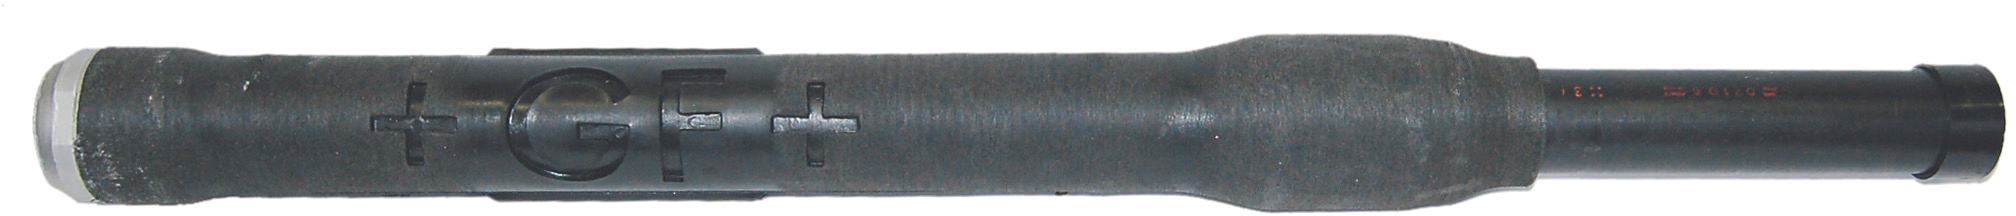 1104, Stahl verzinkt mit IG